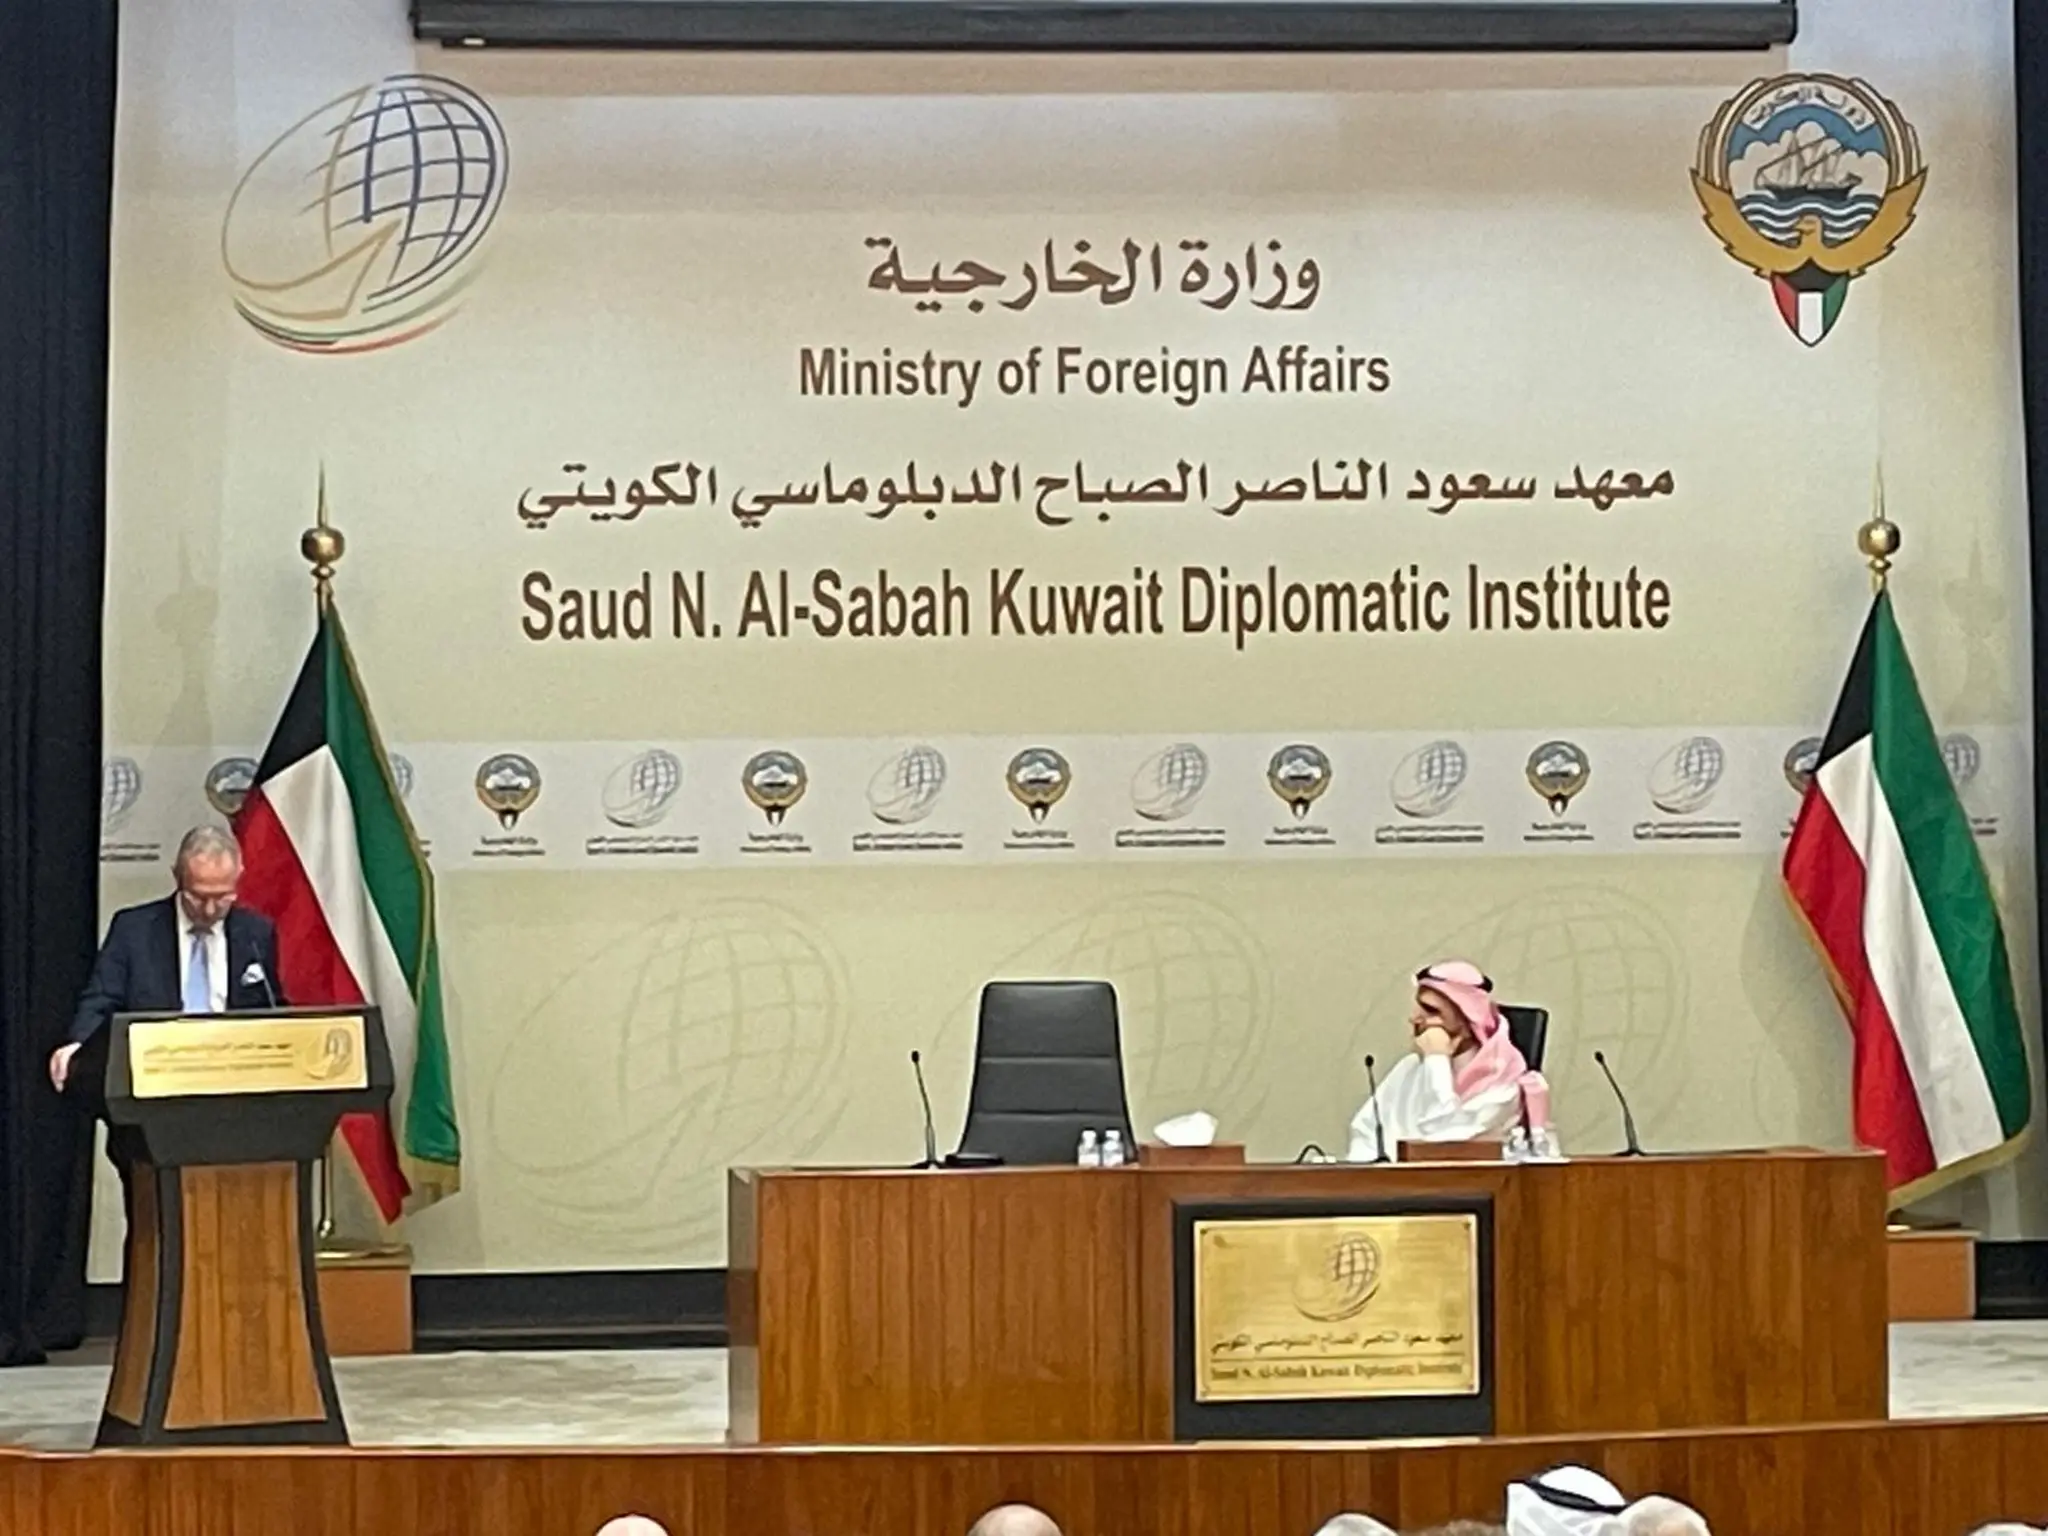 معهد سعود الناصرالكويتي يطرح عدة برامج تدريبية للعاملين بالجهات الحكومية